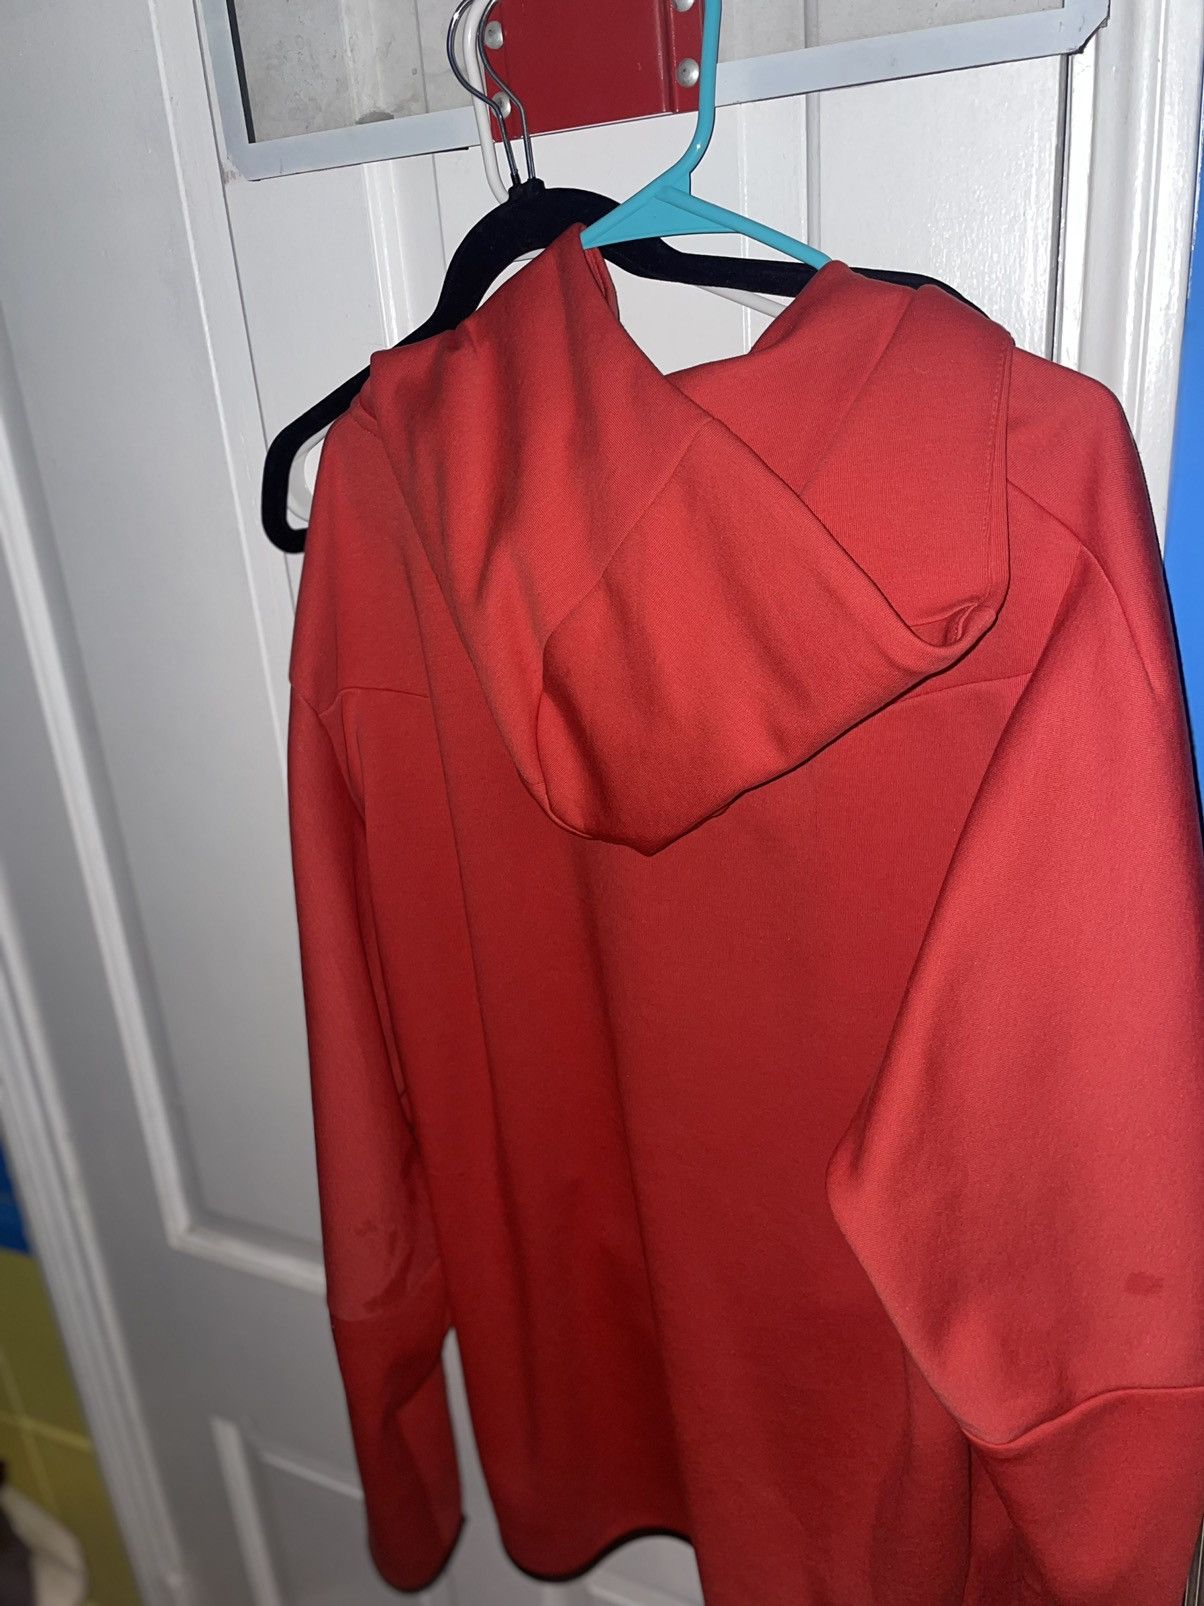 Nike Red Nike Tech Fleece Hoodie Zip up sweatshirt Size XXL Size US XXL / EU 58 / 5 - 4 Thumbnail